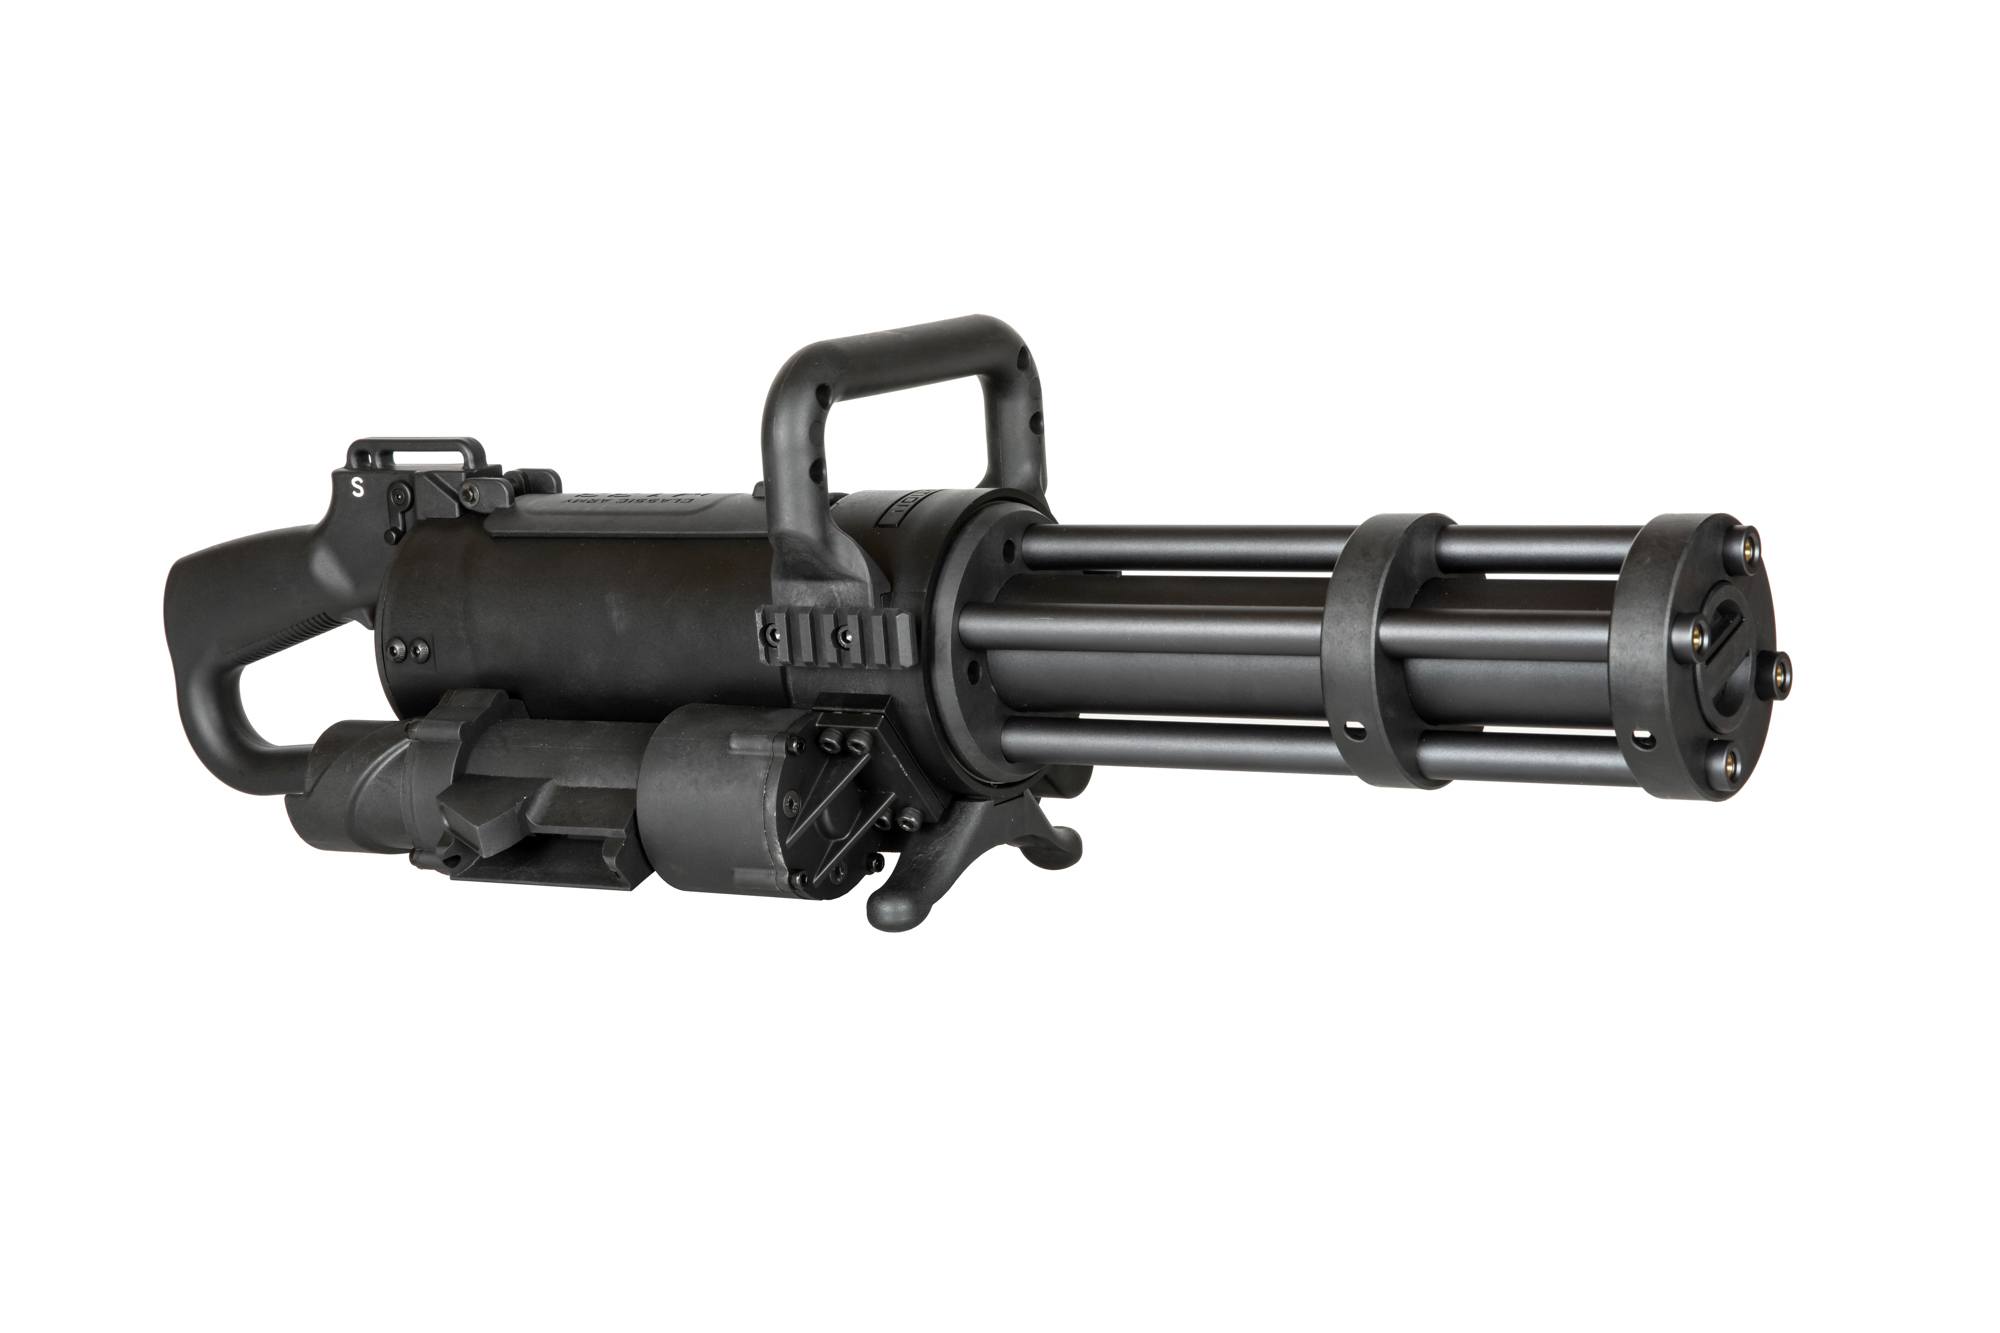 Mitrailleuse Minigun Vulcain M133 Rotative (Well) - Phenix Airsoft